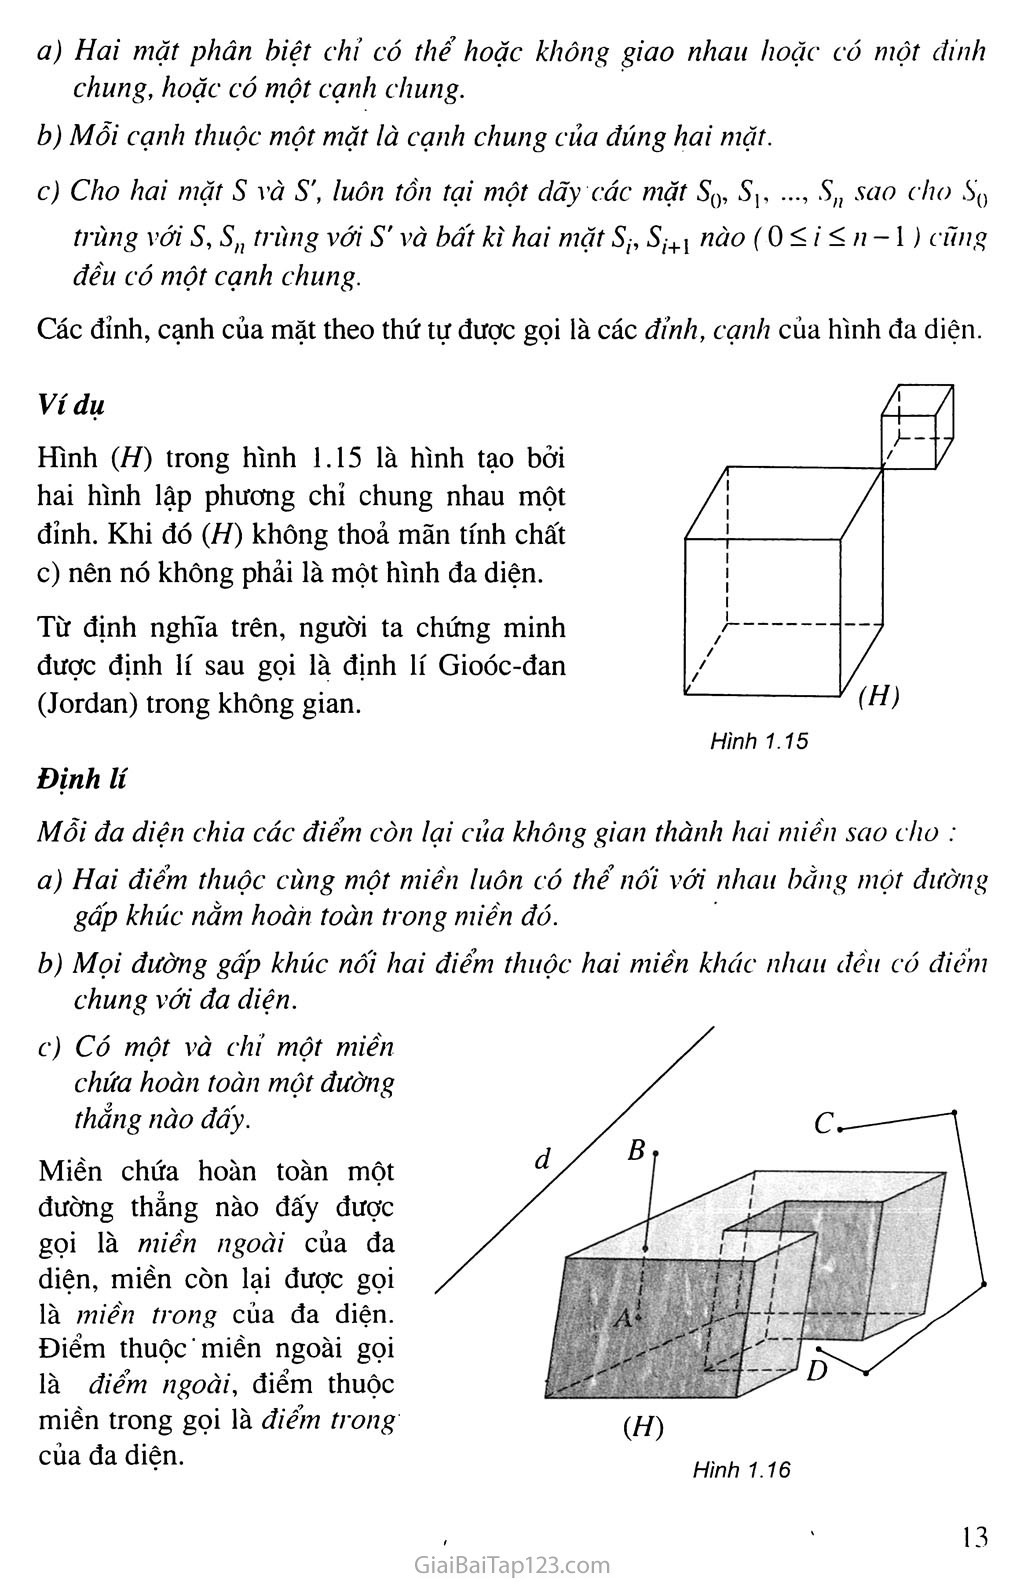 Bài 1. Khái niệm về khối đa diện trang 11